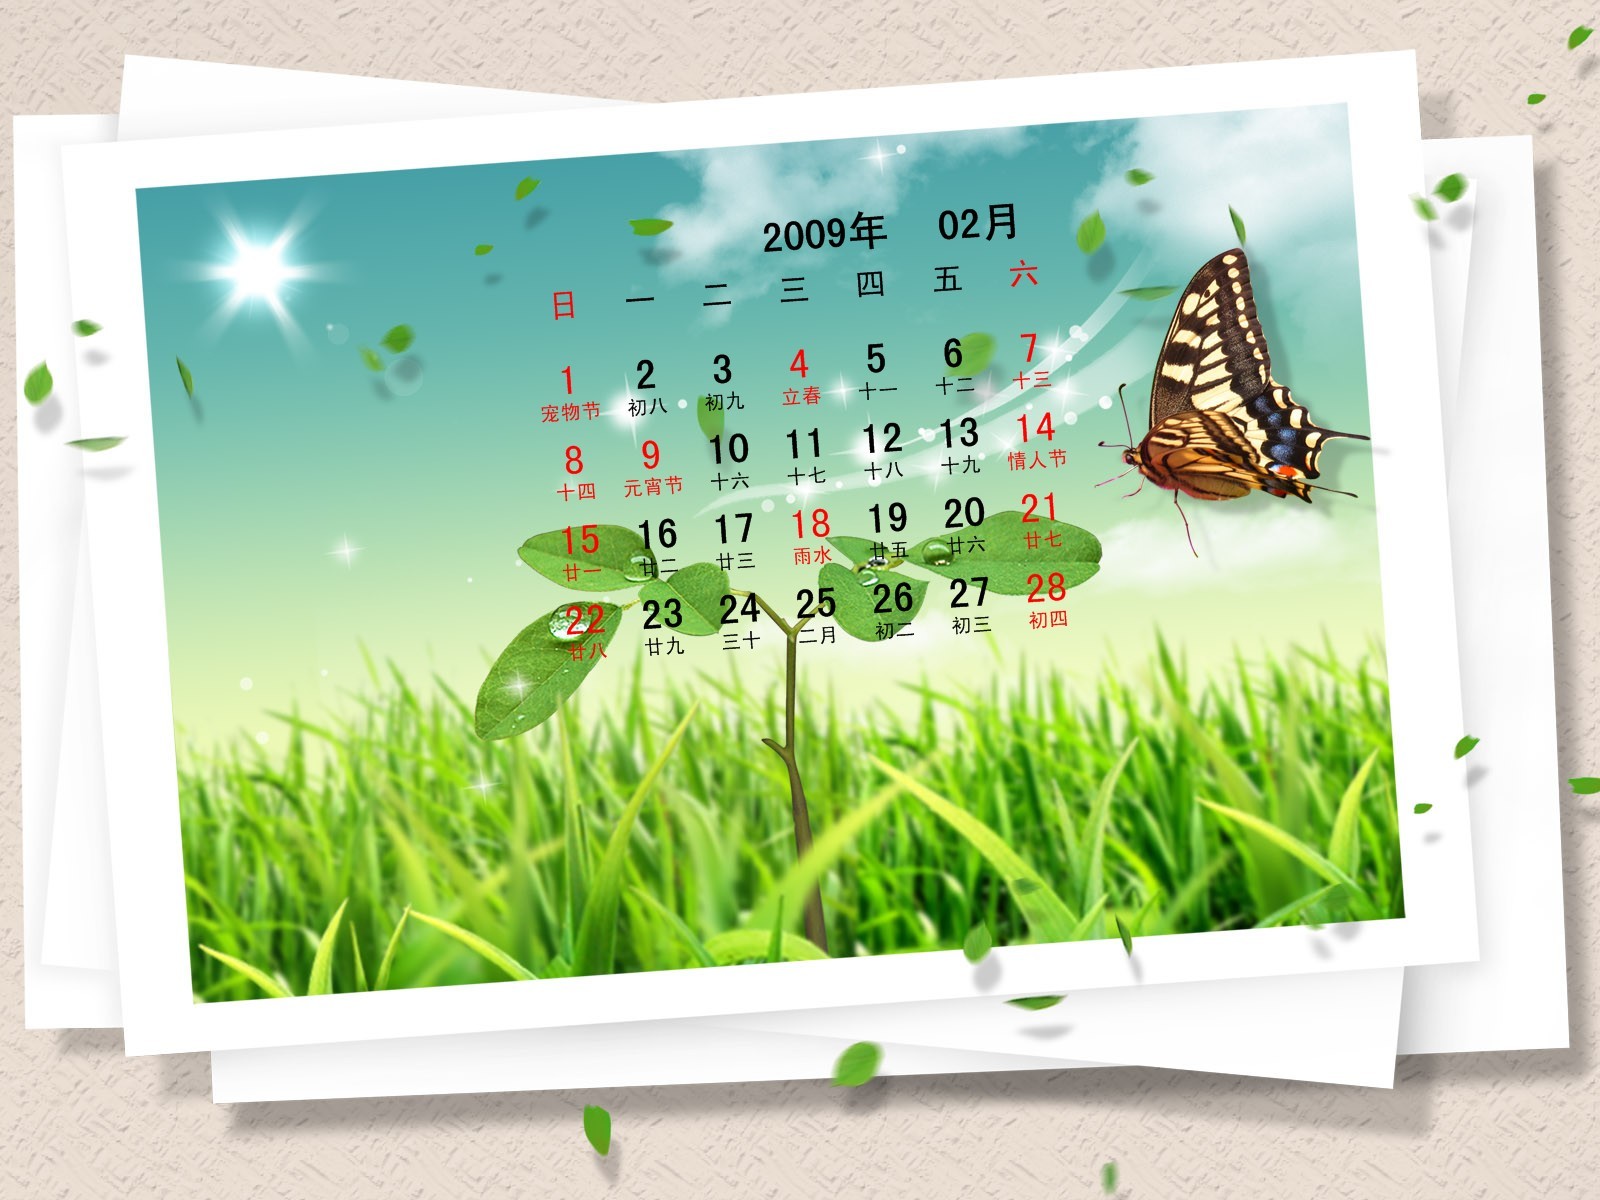 PaperArt 09 roků v kalendáři wallpaper února #29 - 1600x1200